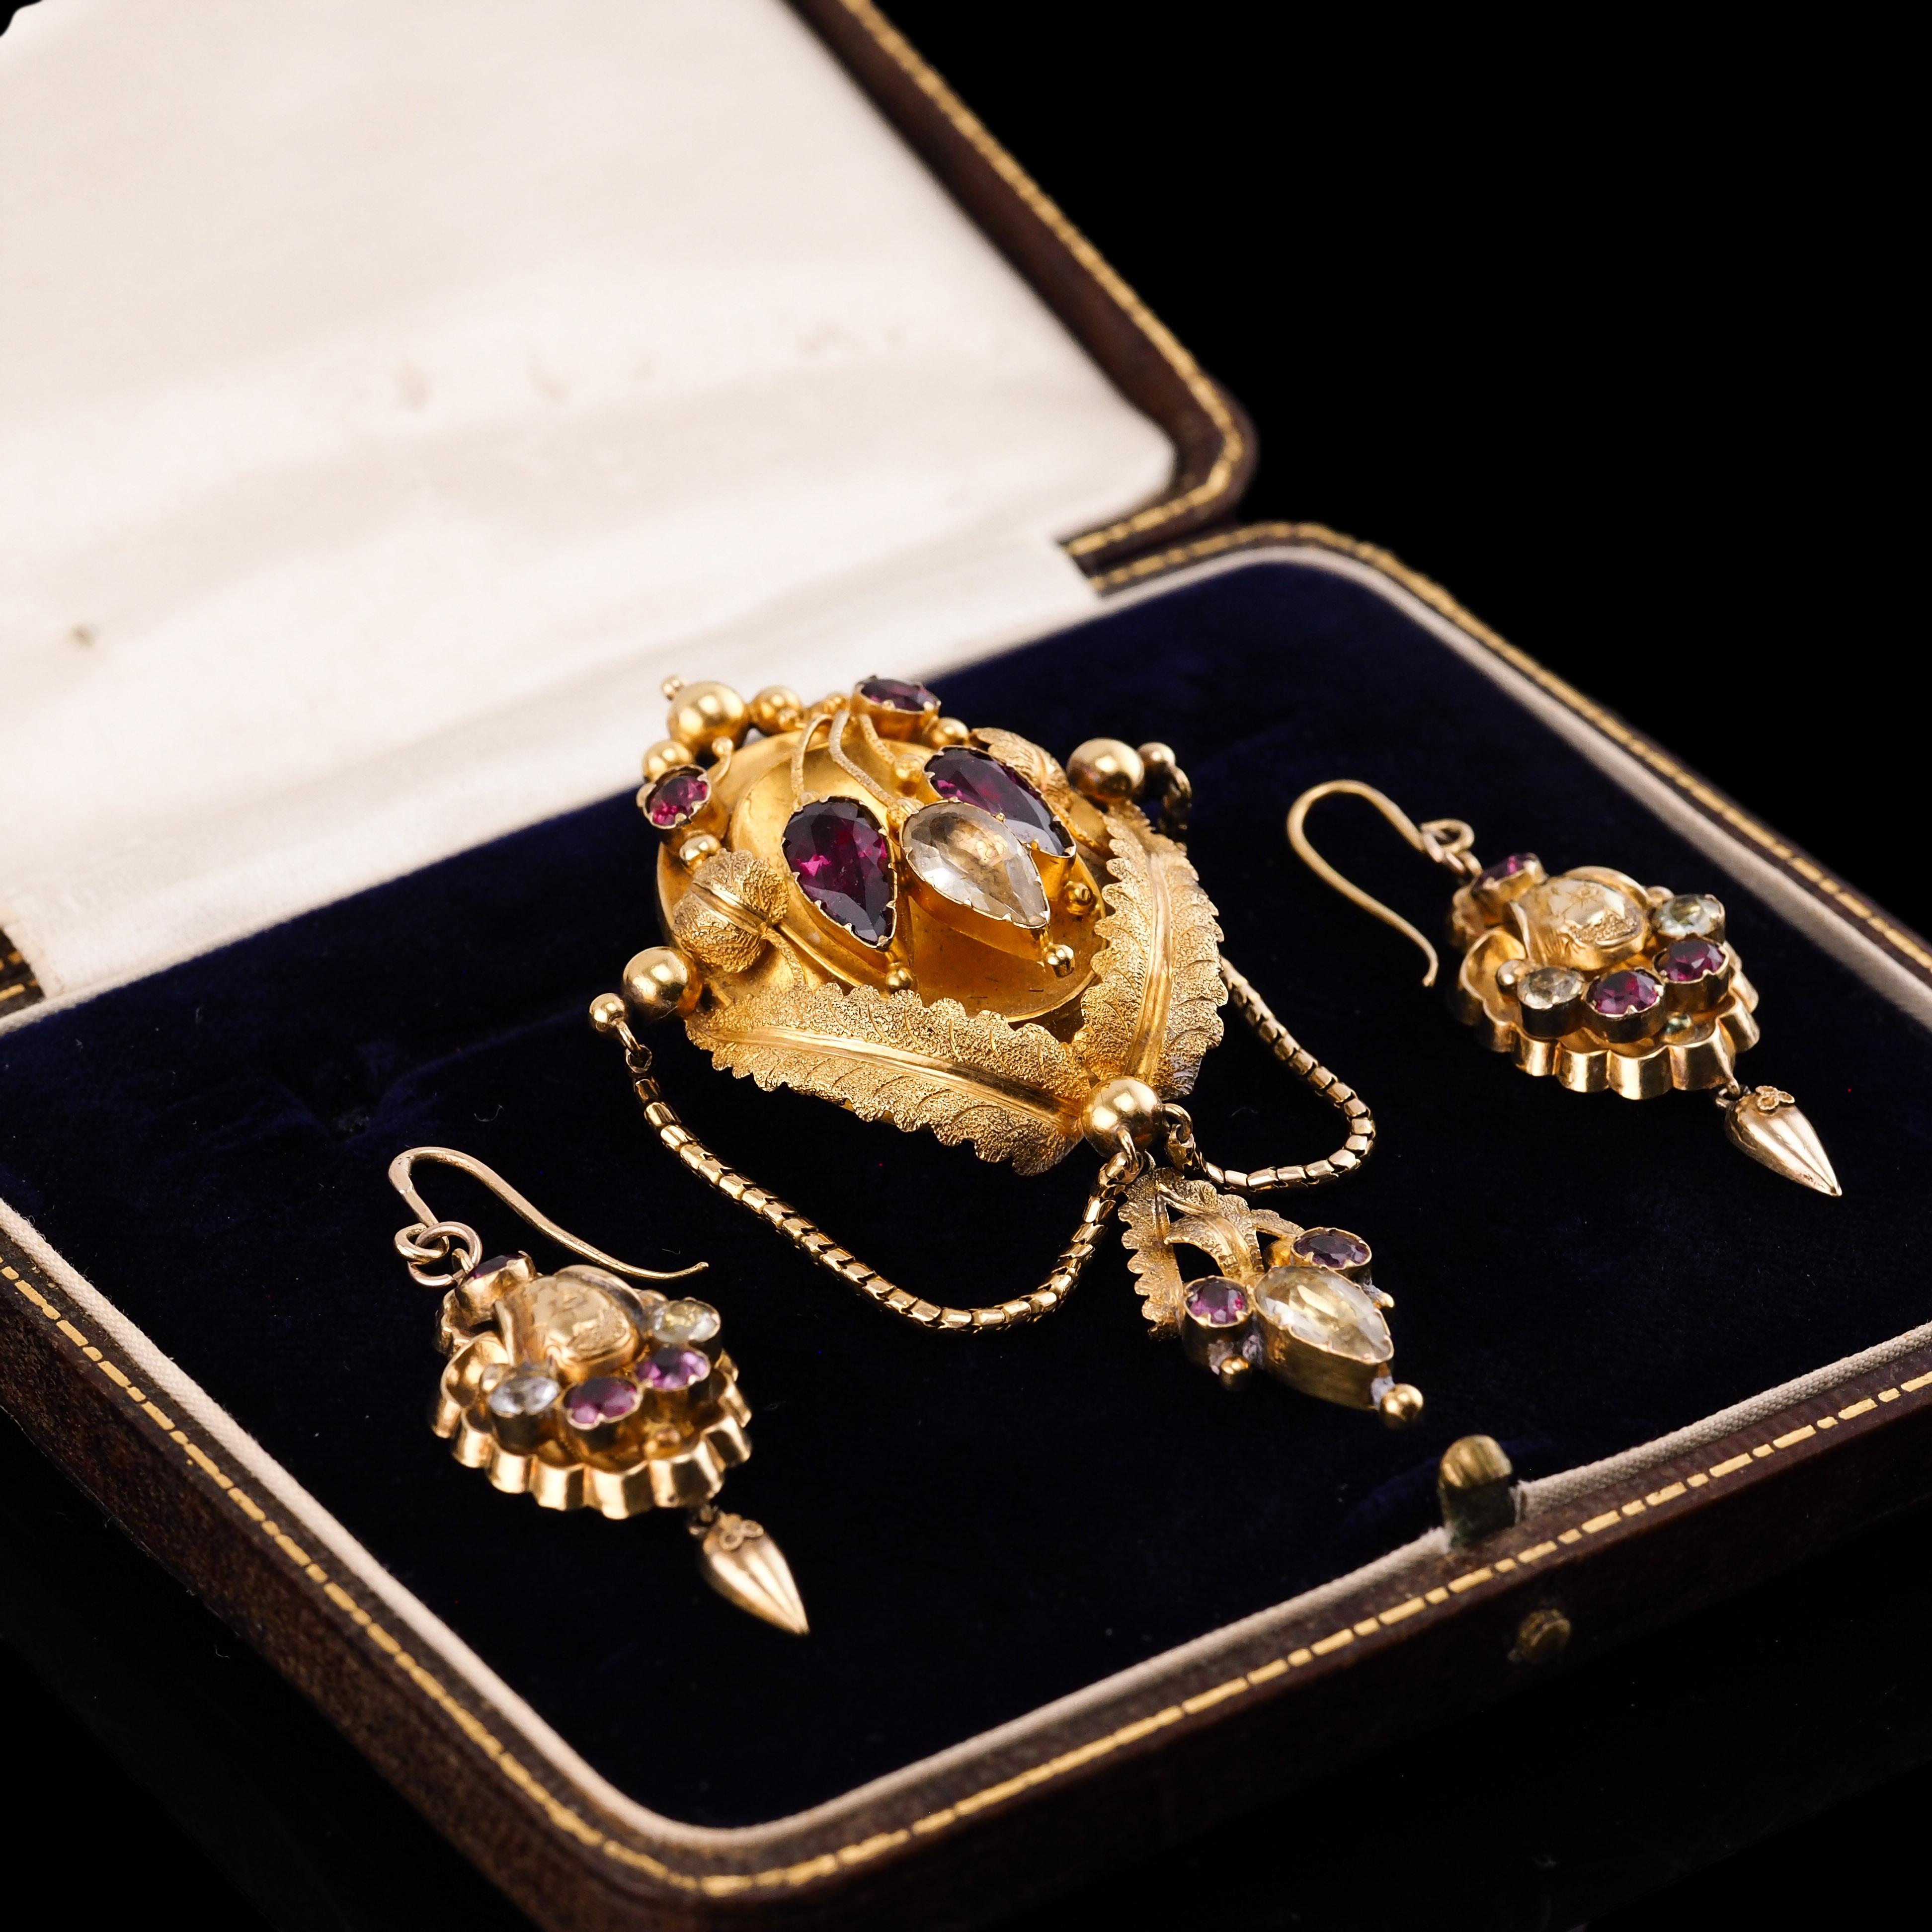 Pear Cut Antique 18K Gold Brooch Pendant & Earrings Garnet & Chrysoberyl - c.1870